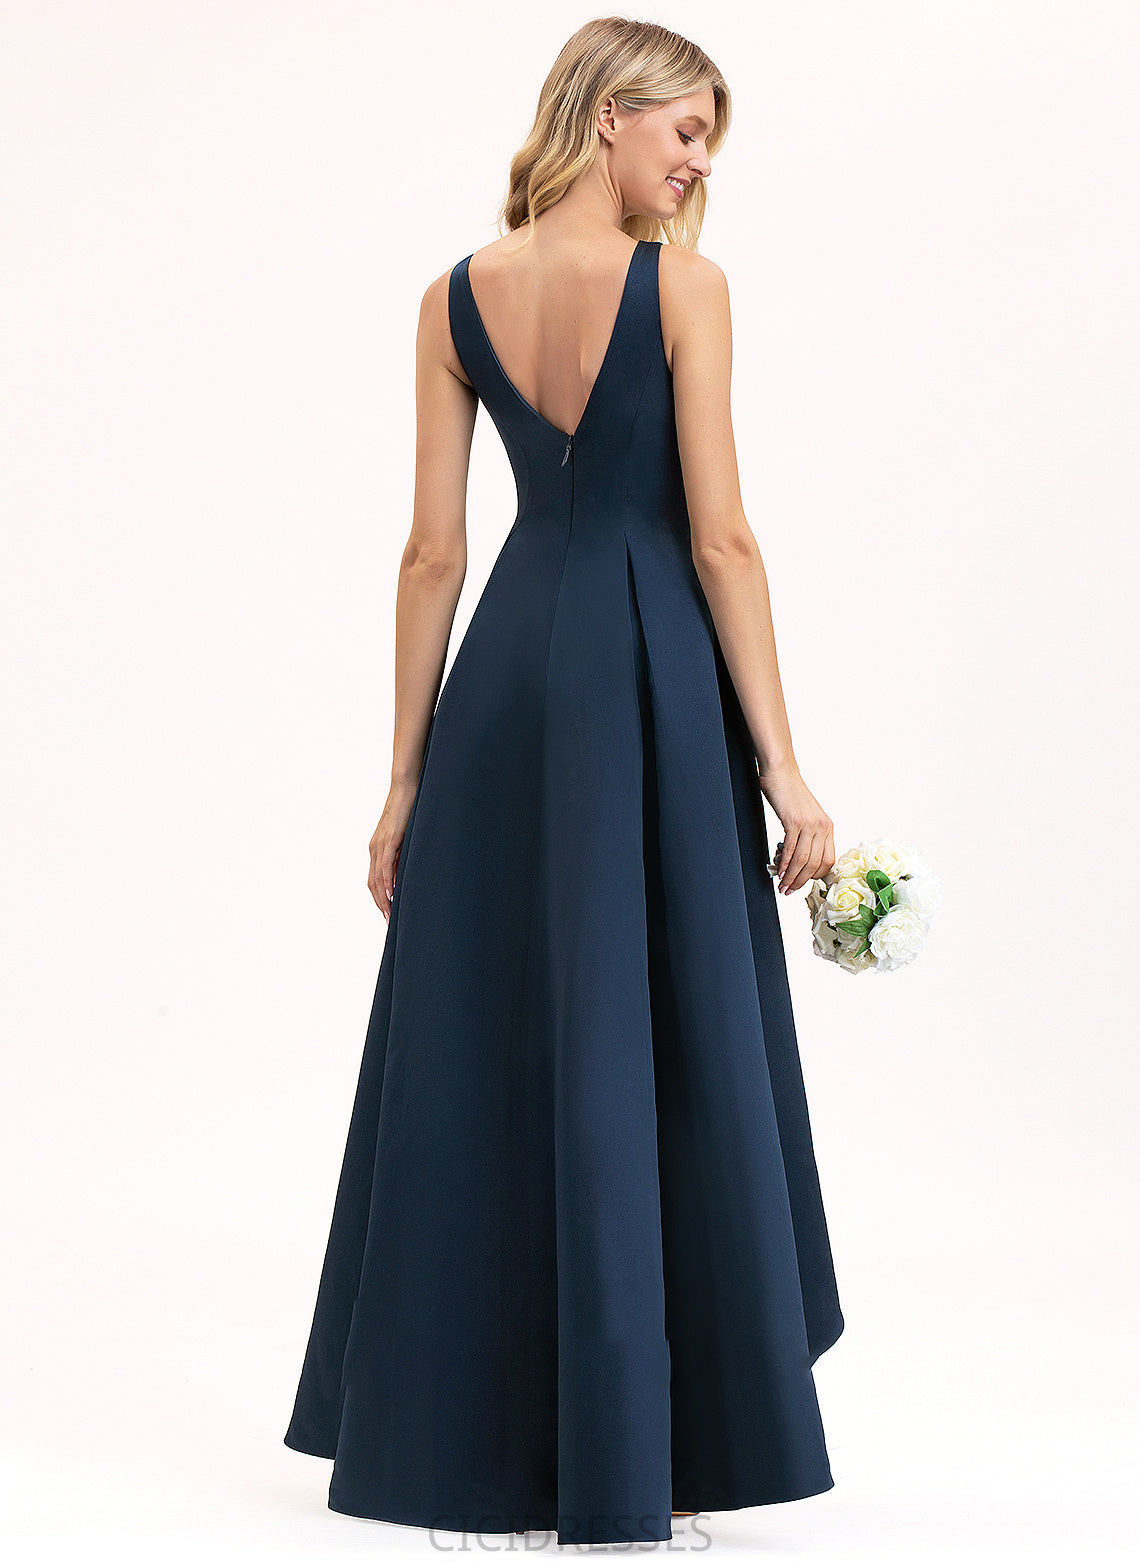 Silhouette A-Line Neckline Pockets ScoopNeck Length Fabric Embellishment Asymmetrical Justine A-Line/Princess Natural Waist Bridesmaid Dresses